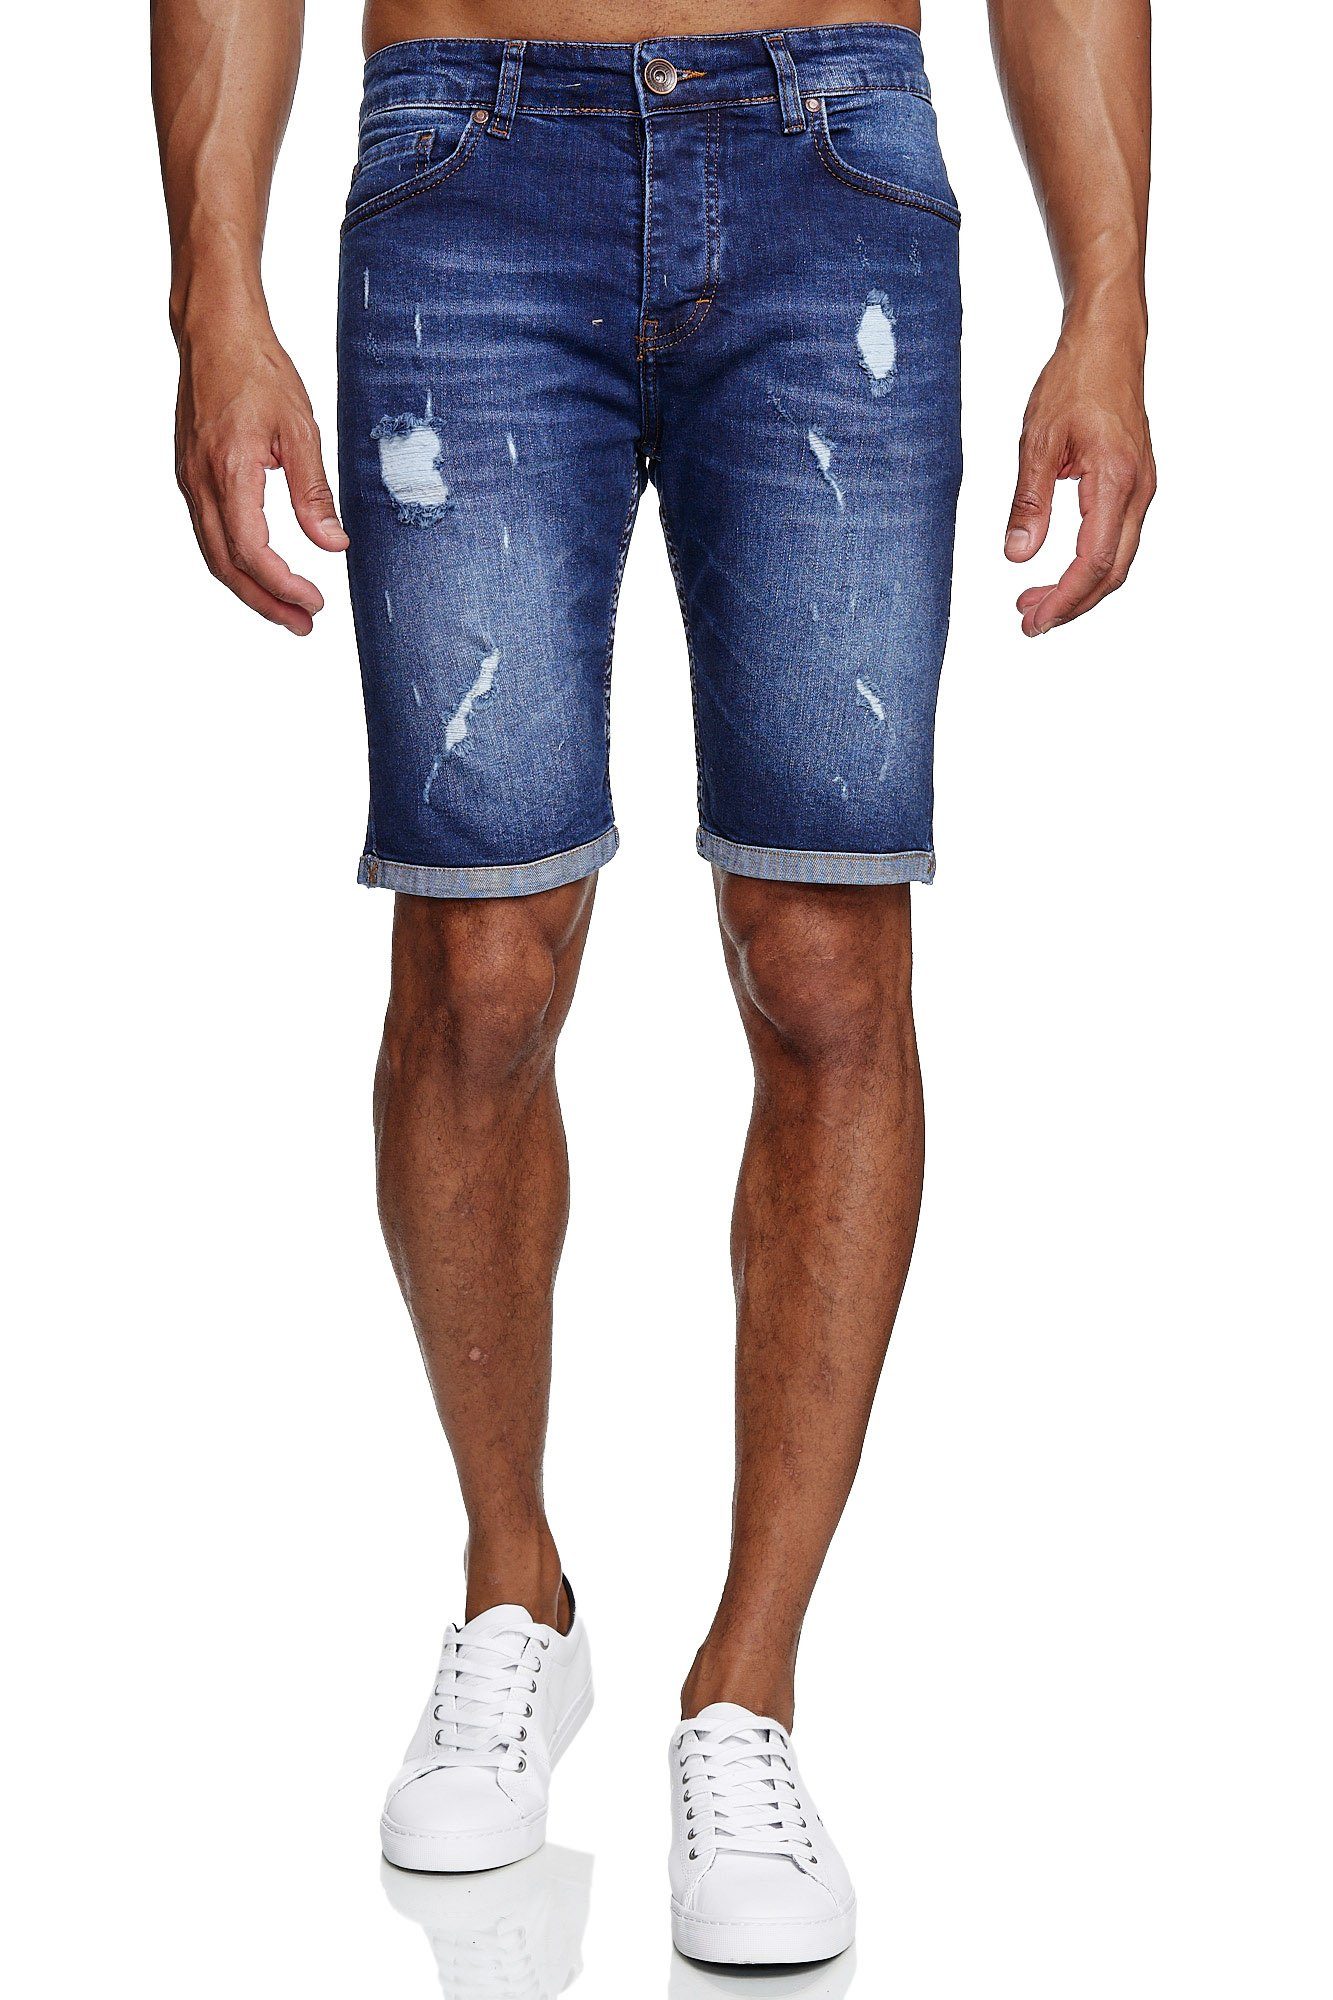 34 38 36 Herren  Capri  Jeans  Short  Bermuda  Kurze Hose  Neu  Bund 32 